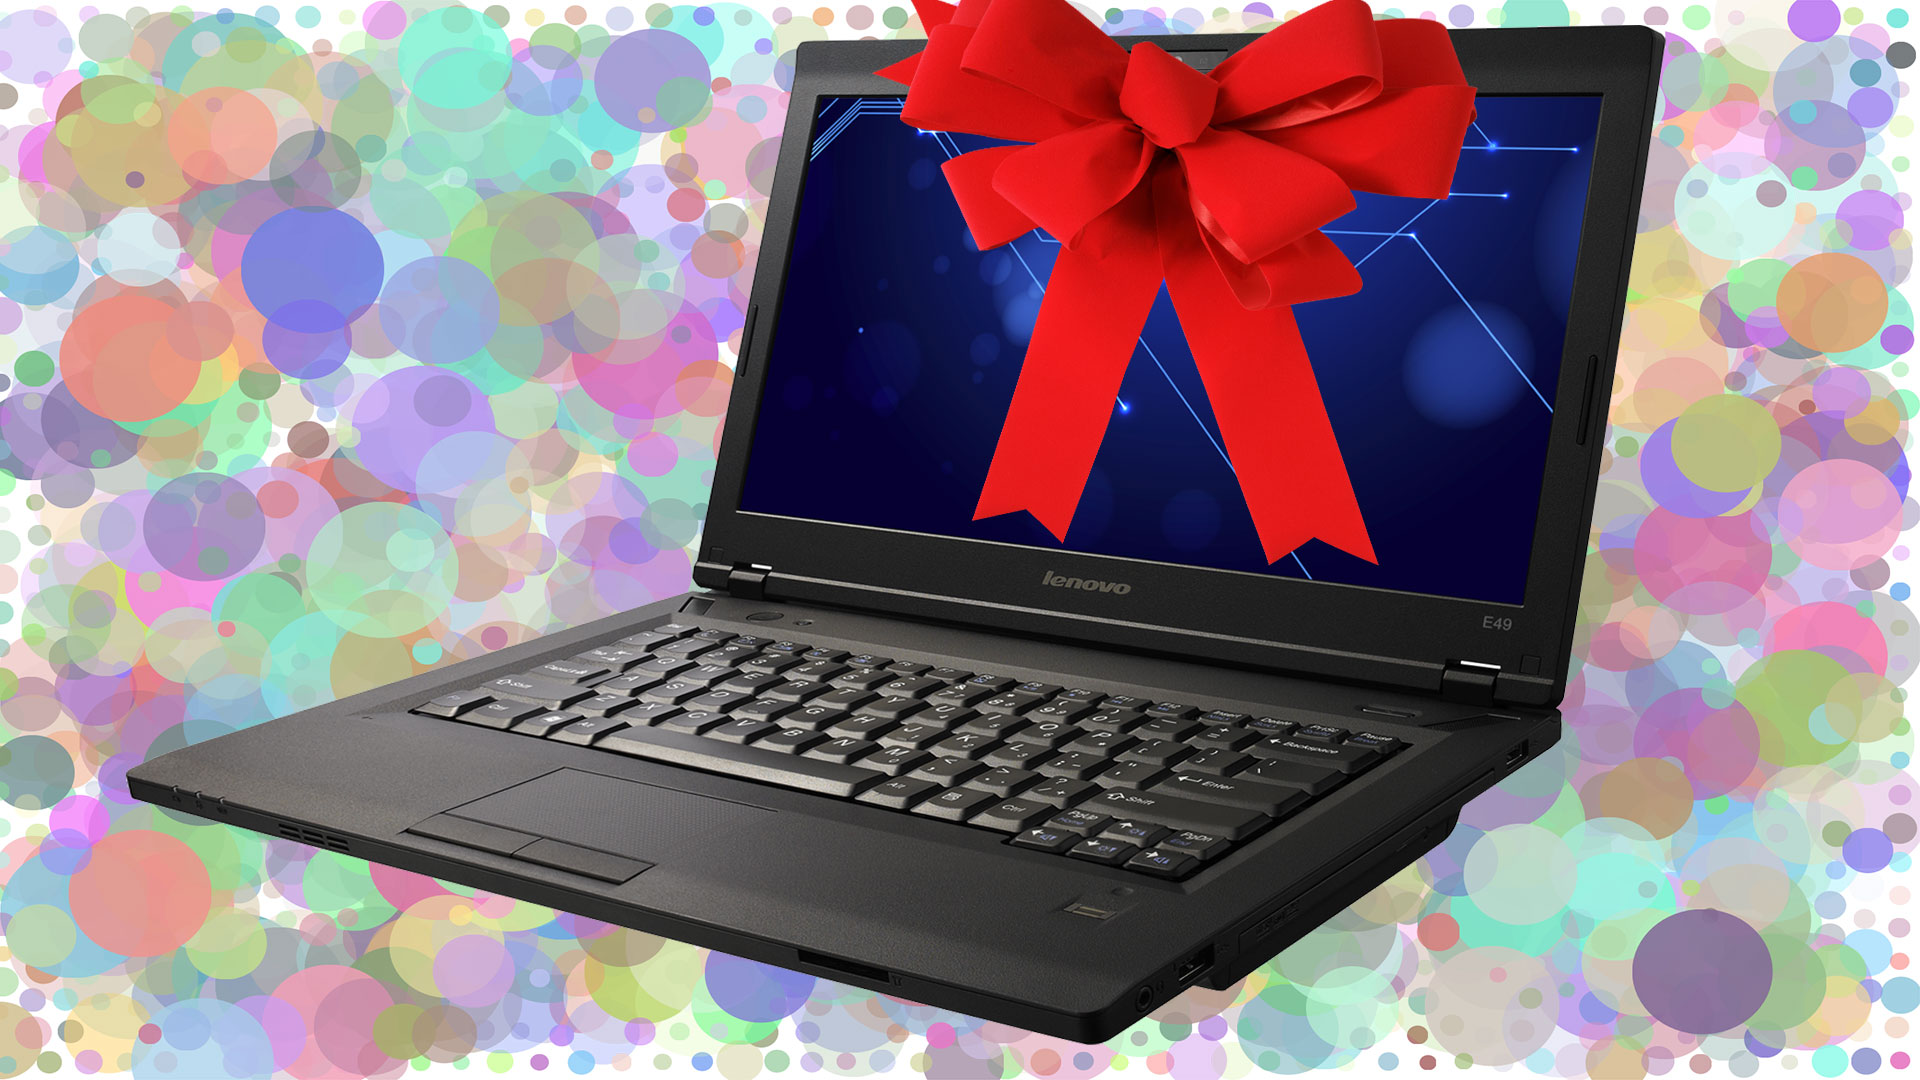 Как выиграть конкурс за репост - приз ноутбук, приглашаю всех на бесплатный интернет розыгрыш с ценными подарками